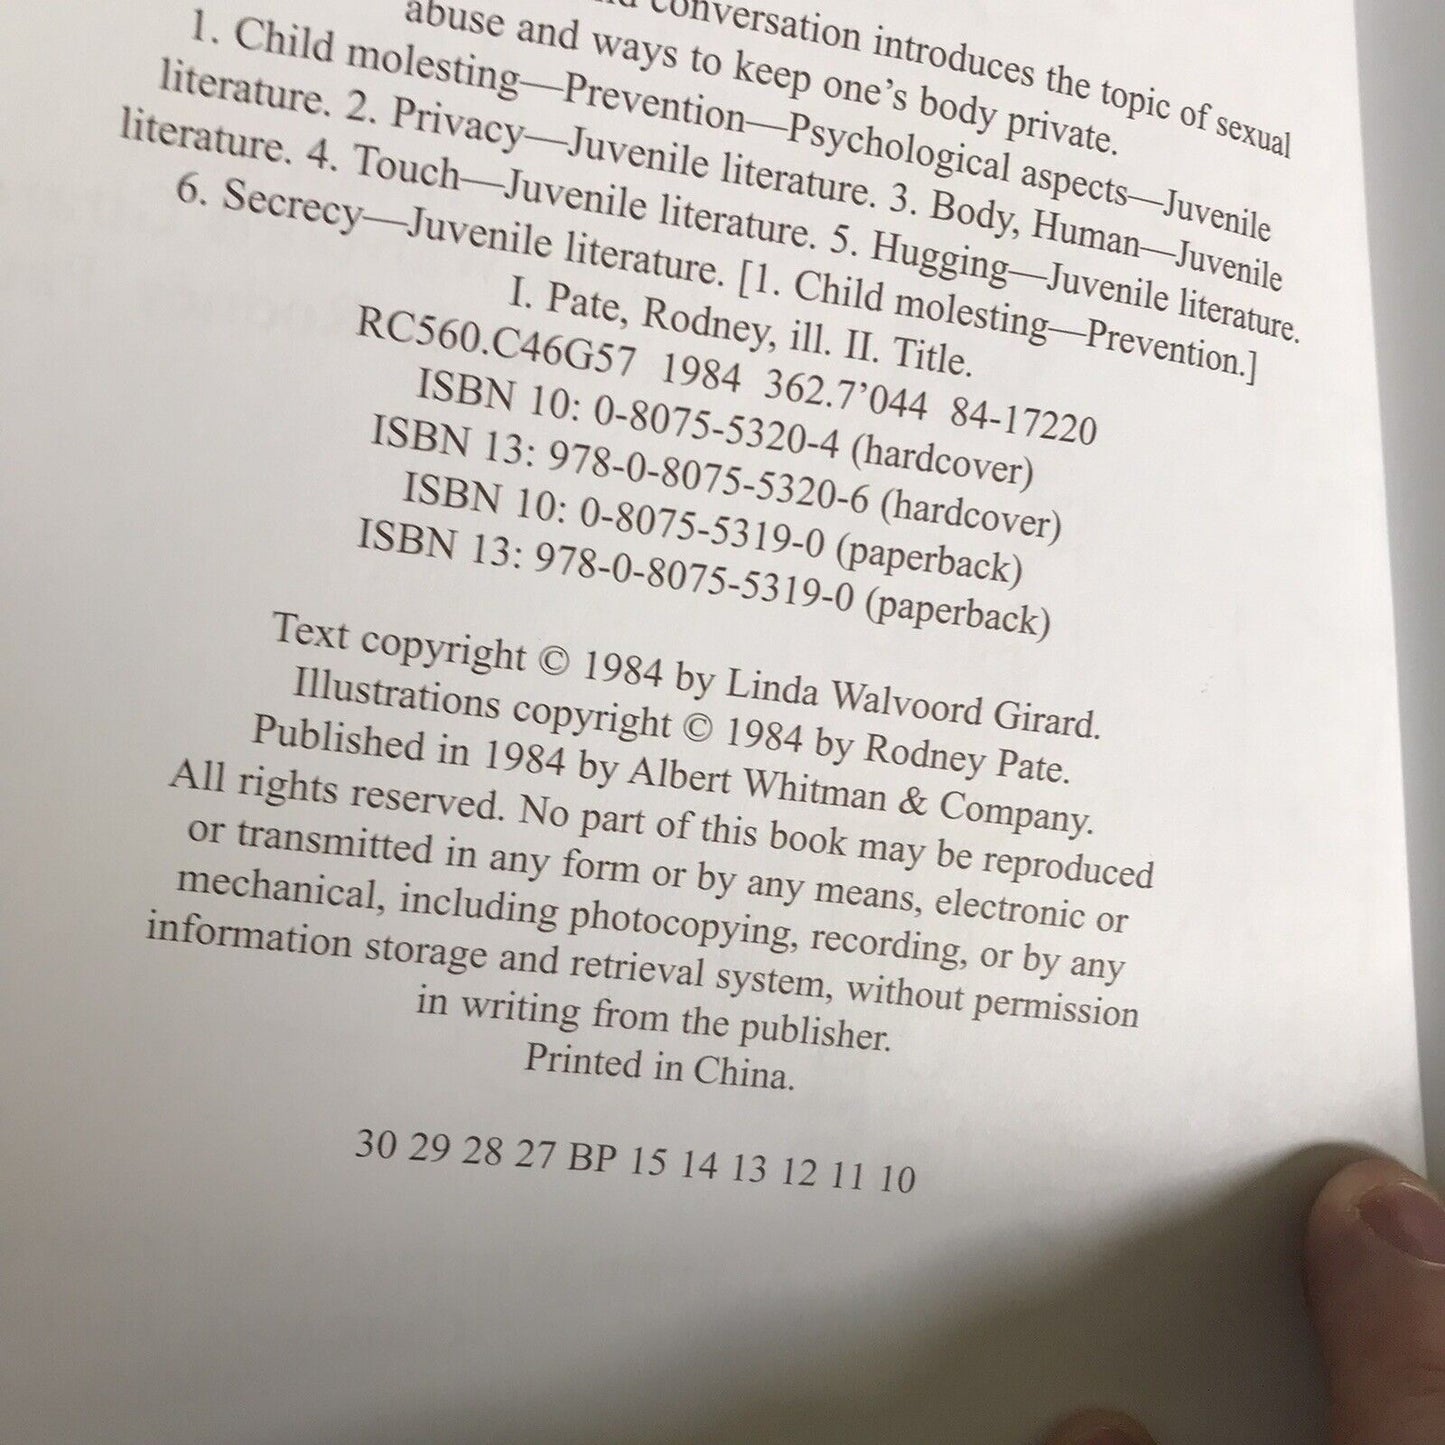 Mein Körper ist privat: Sexueller Kindesmissbrauch von Linda Girard (Taschenbuch, 1984)